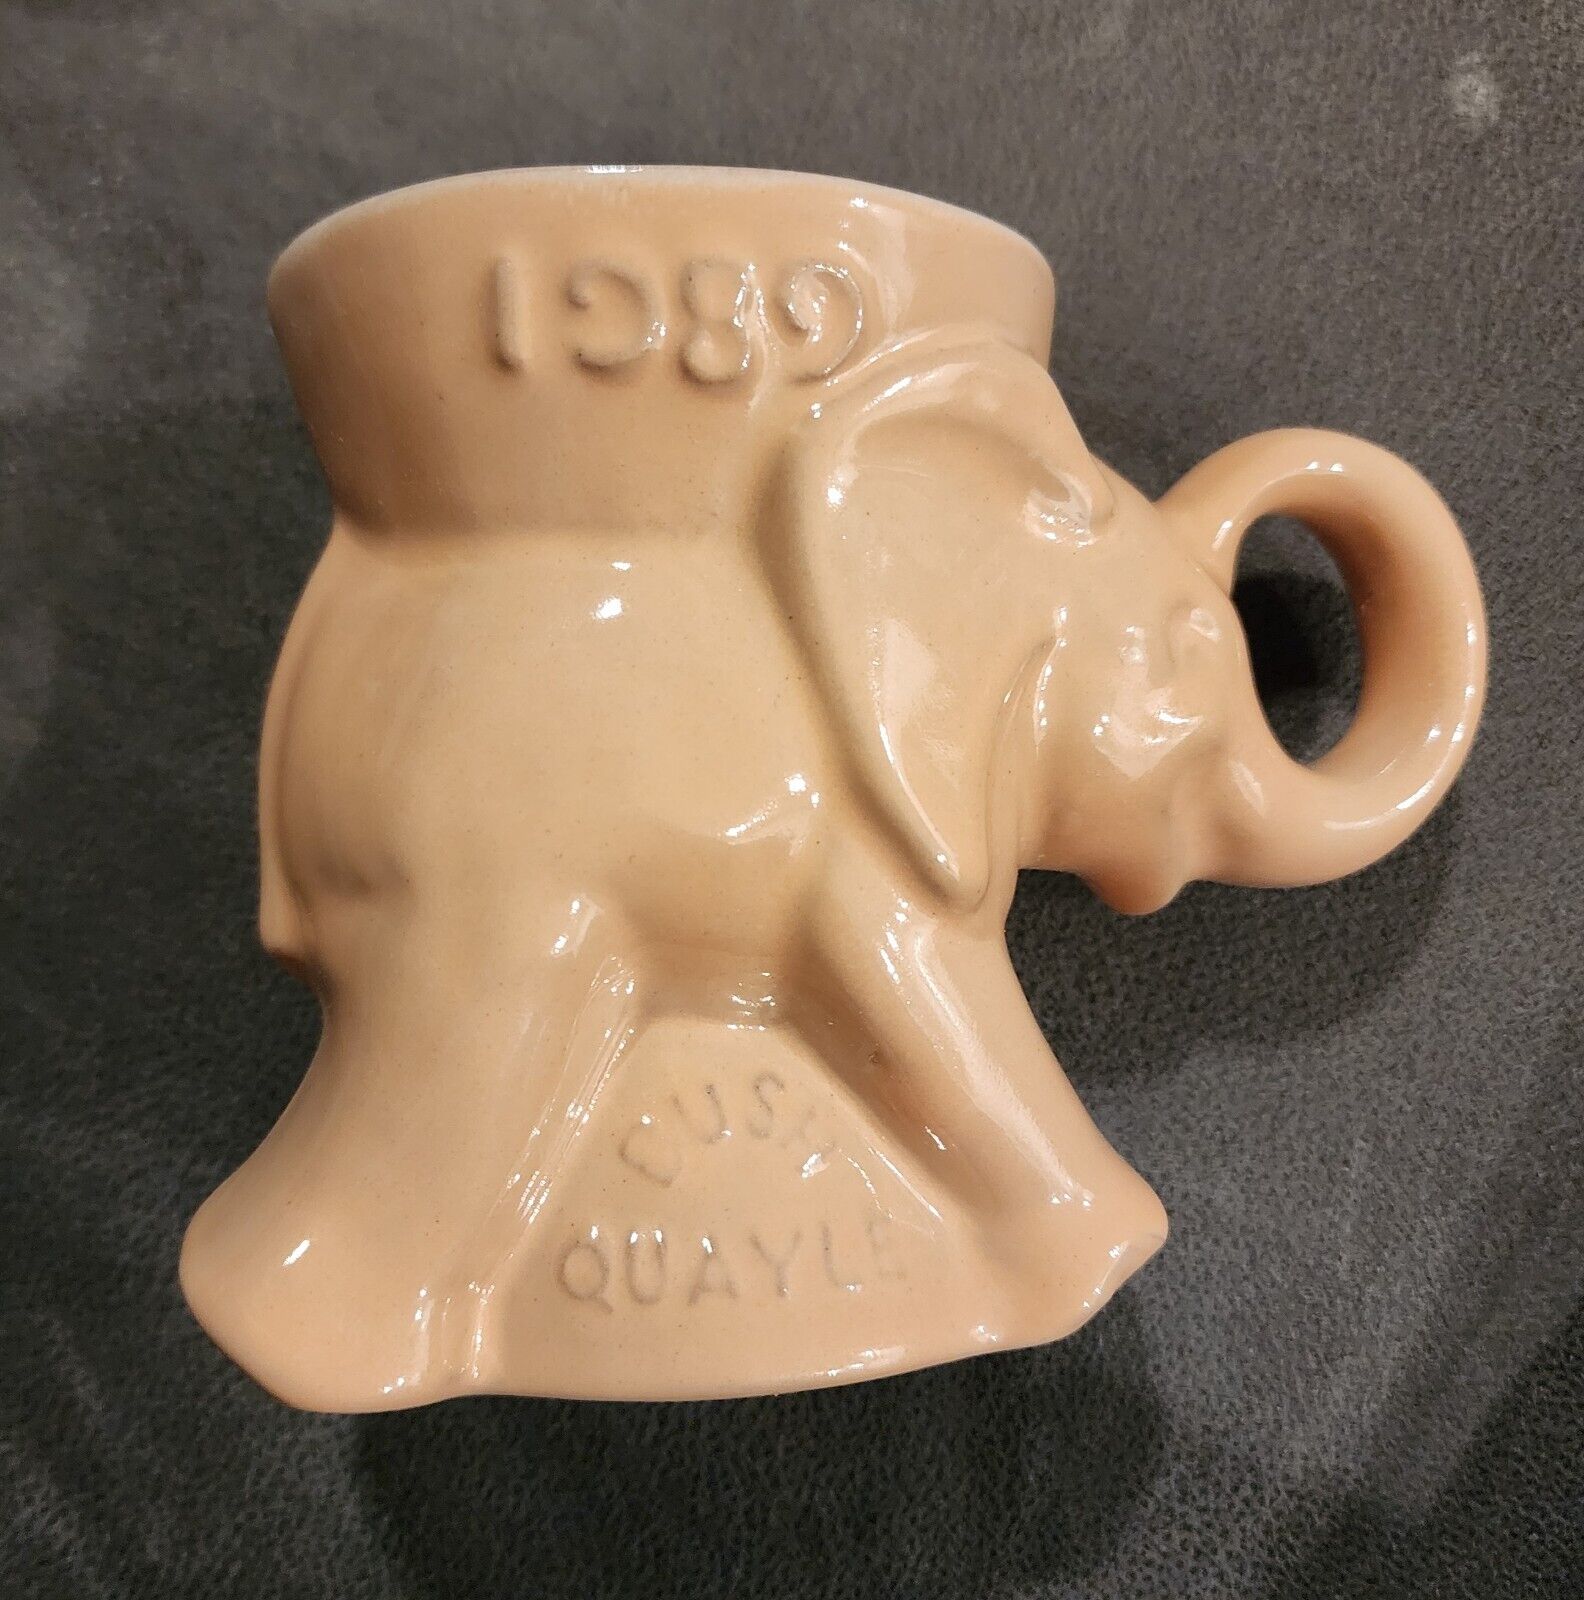 1989 Frankoma Pottery Mug - GOP Republican Elephant - Bush/Quayle Peach